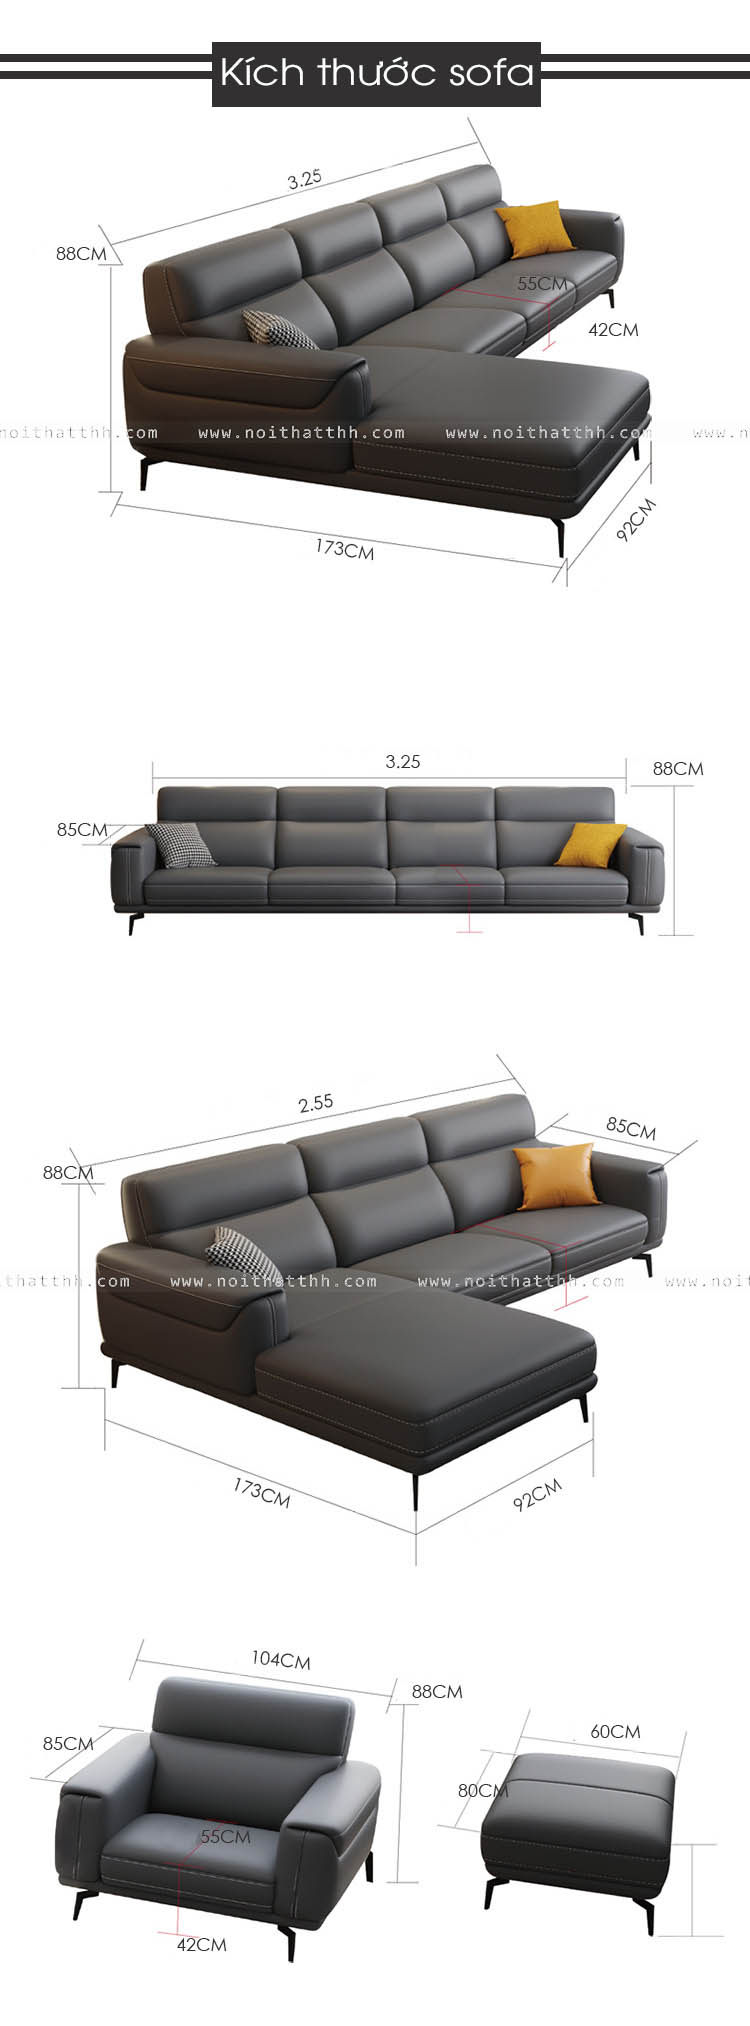 Kích thước sofa phòng khách